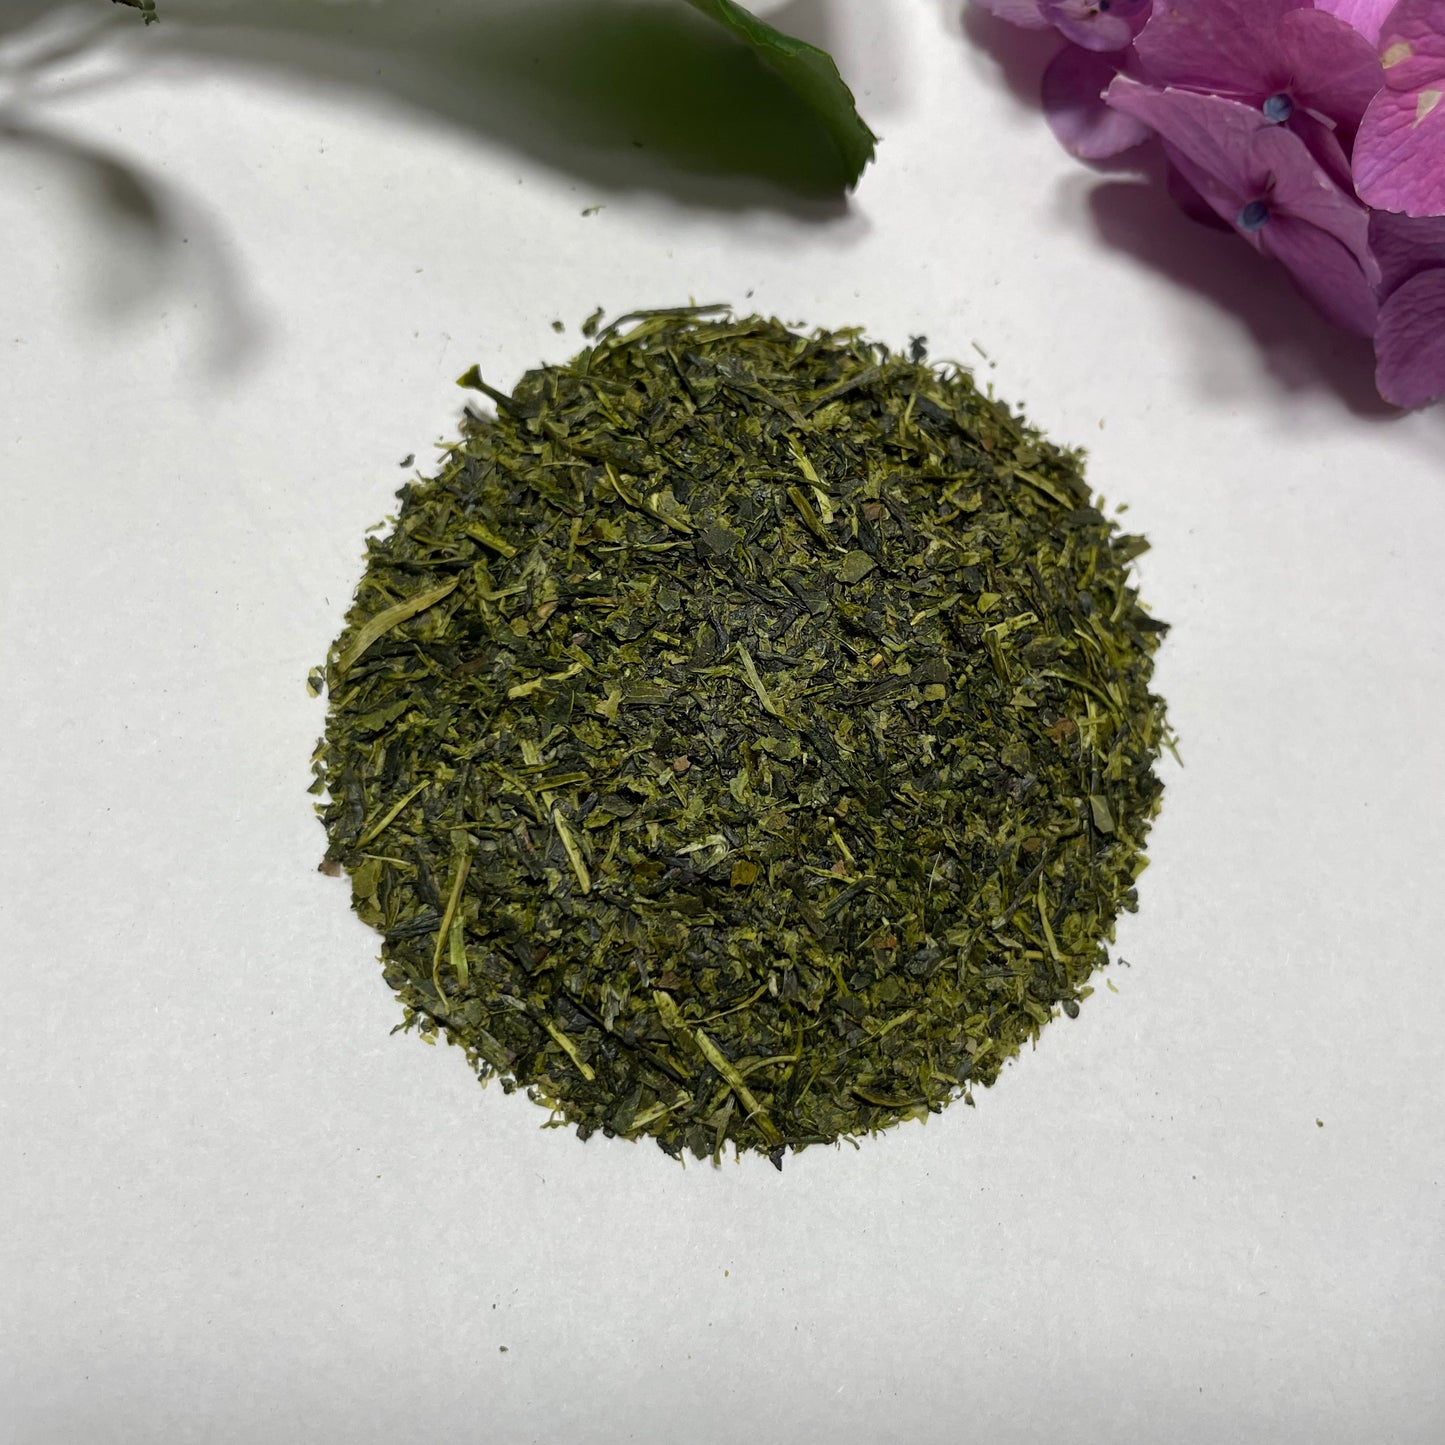 Tsuyuhikari - Single Origin Green Tea